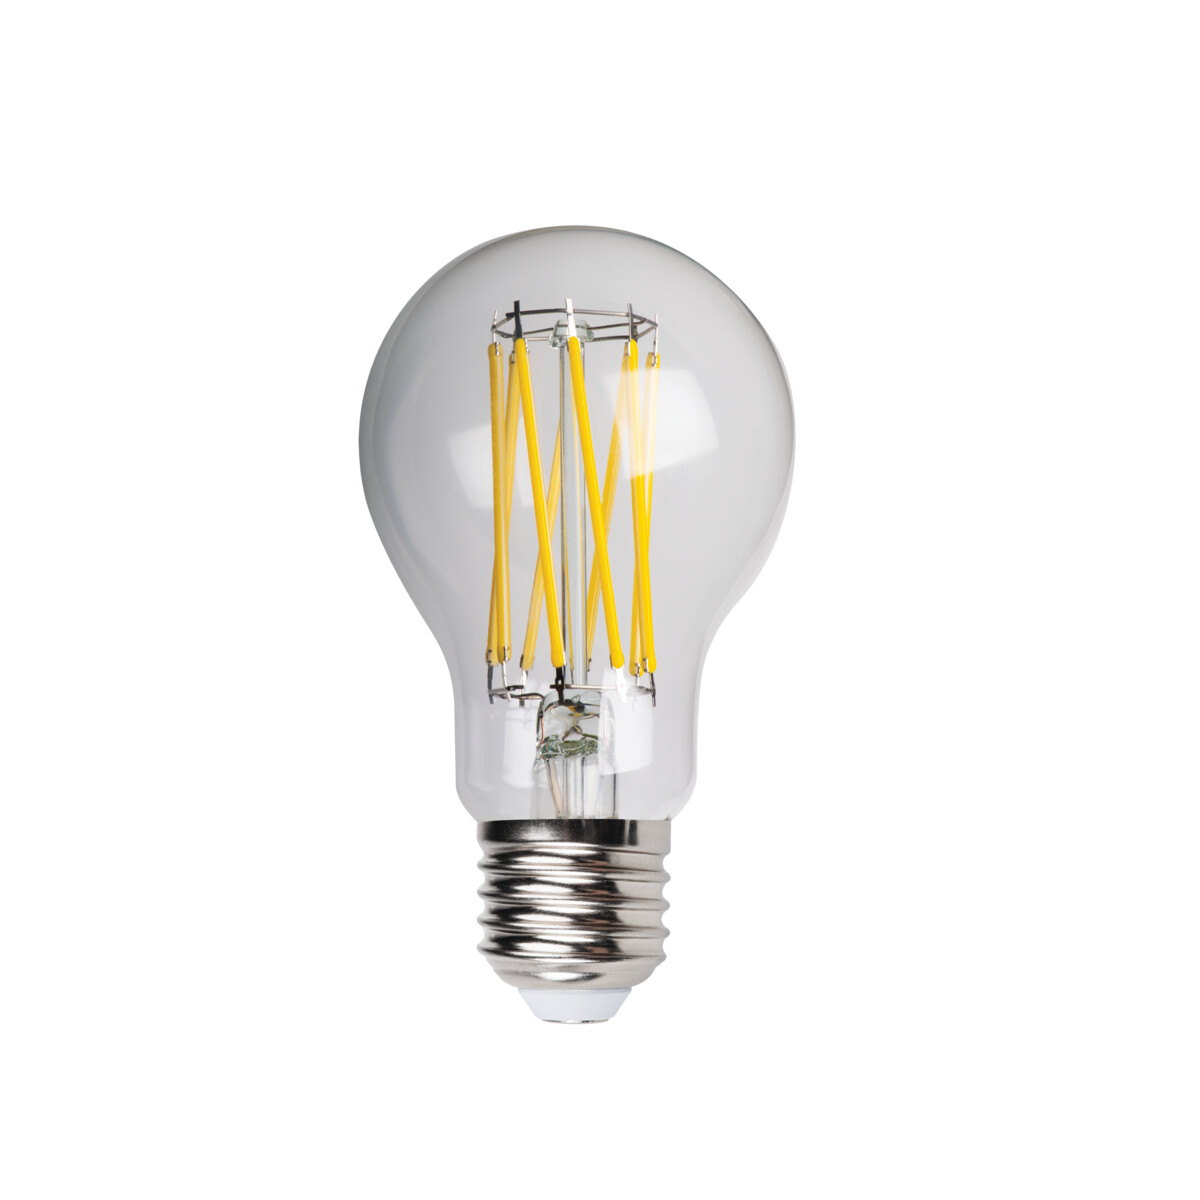 Ampoule LED standard E27 8,8W 806Lm 3000K - garantie 2 ans